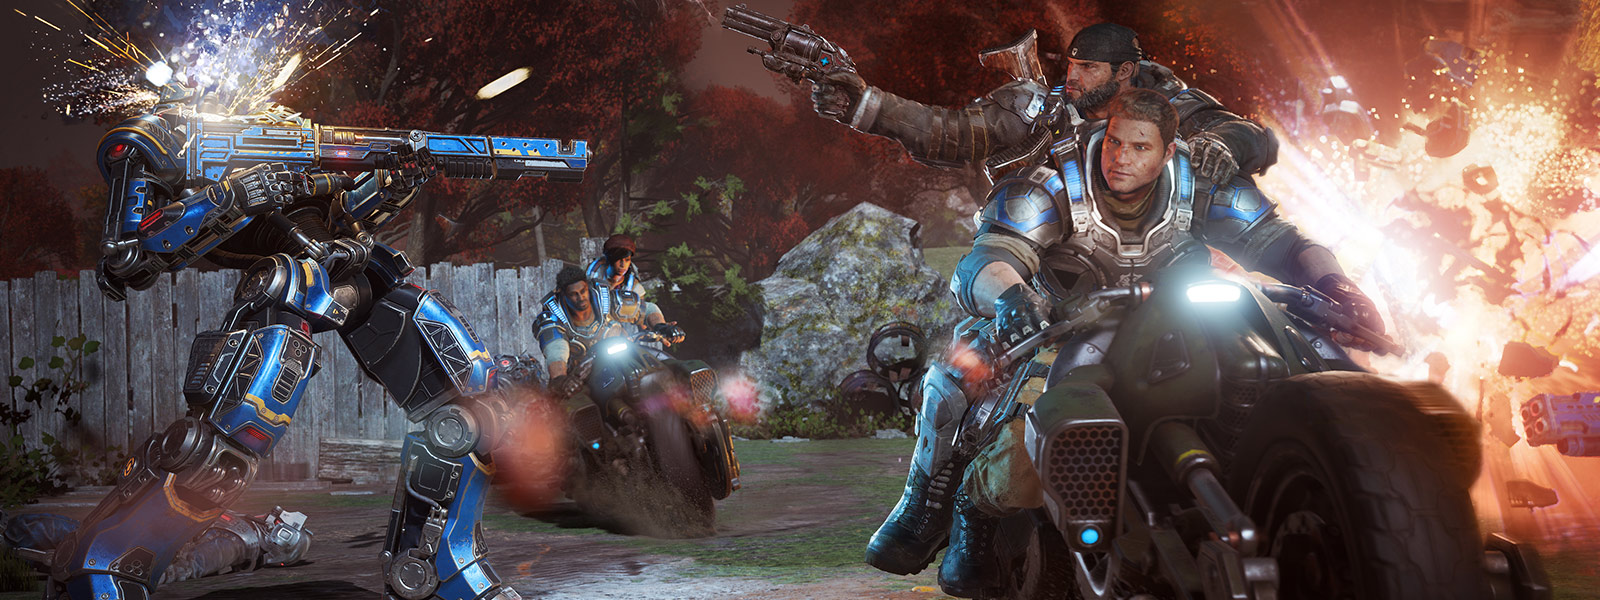 JD Fenix og hans venner affyrer våben og kører motorcykler under en kamp fra spillet Gears of War 4